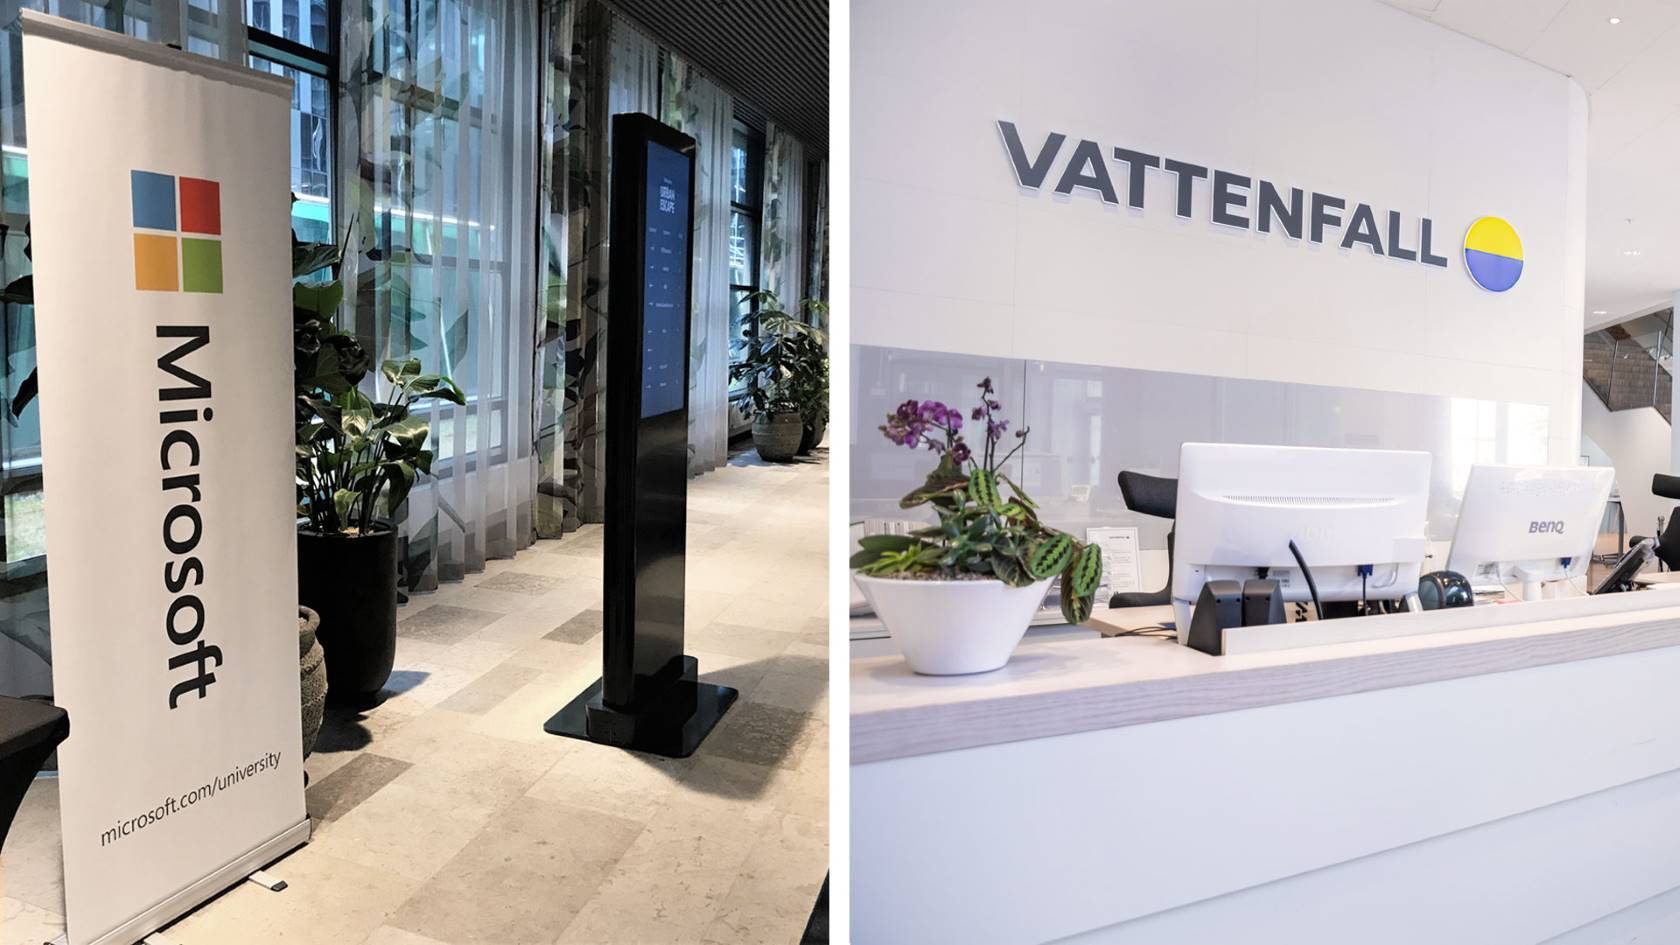 Billeder fra Microsofts Stockholm-kontor og Vattenfalls reception i Solna-hovedkvarteret